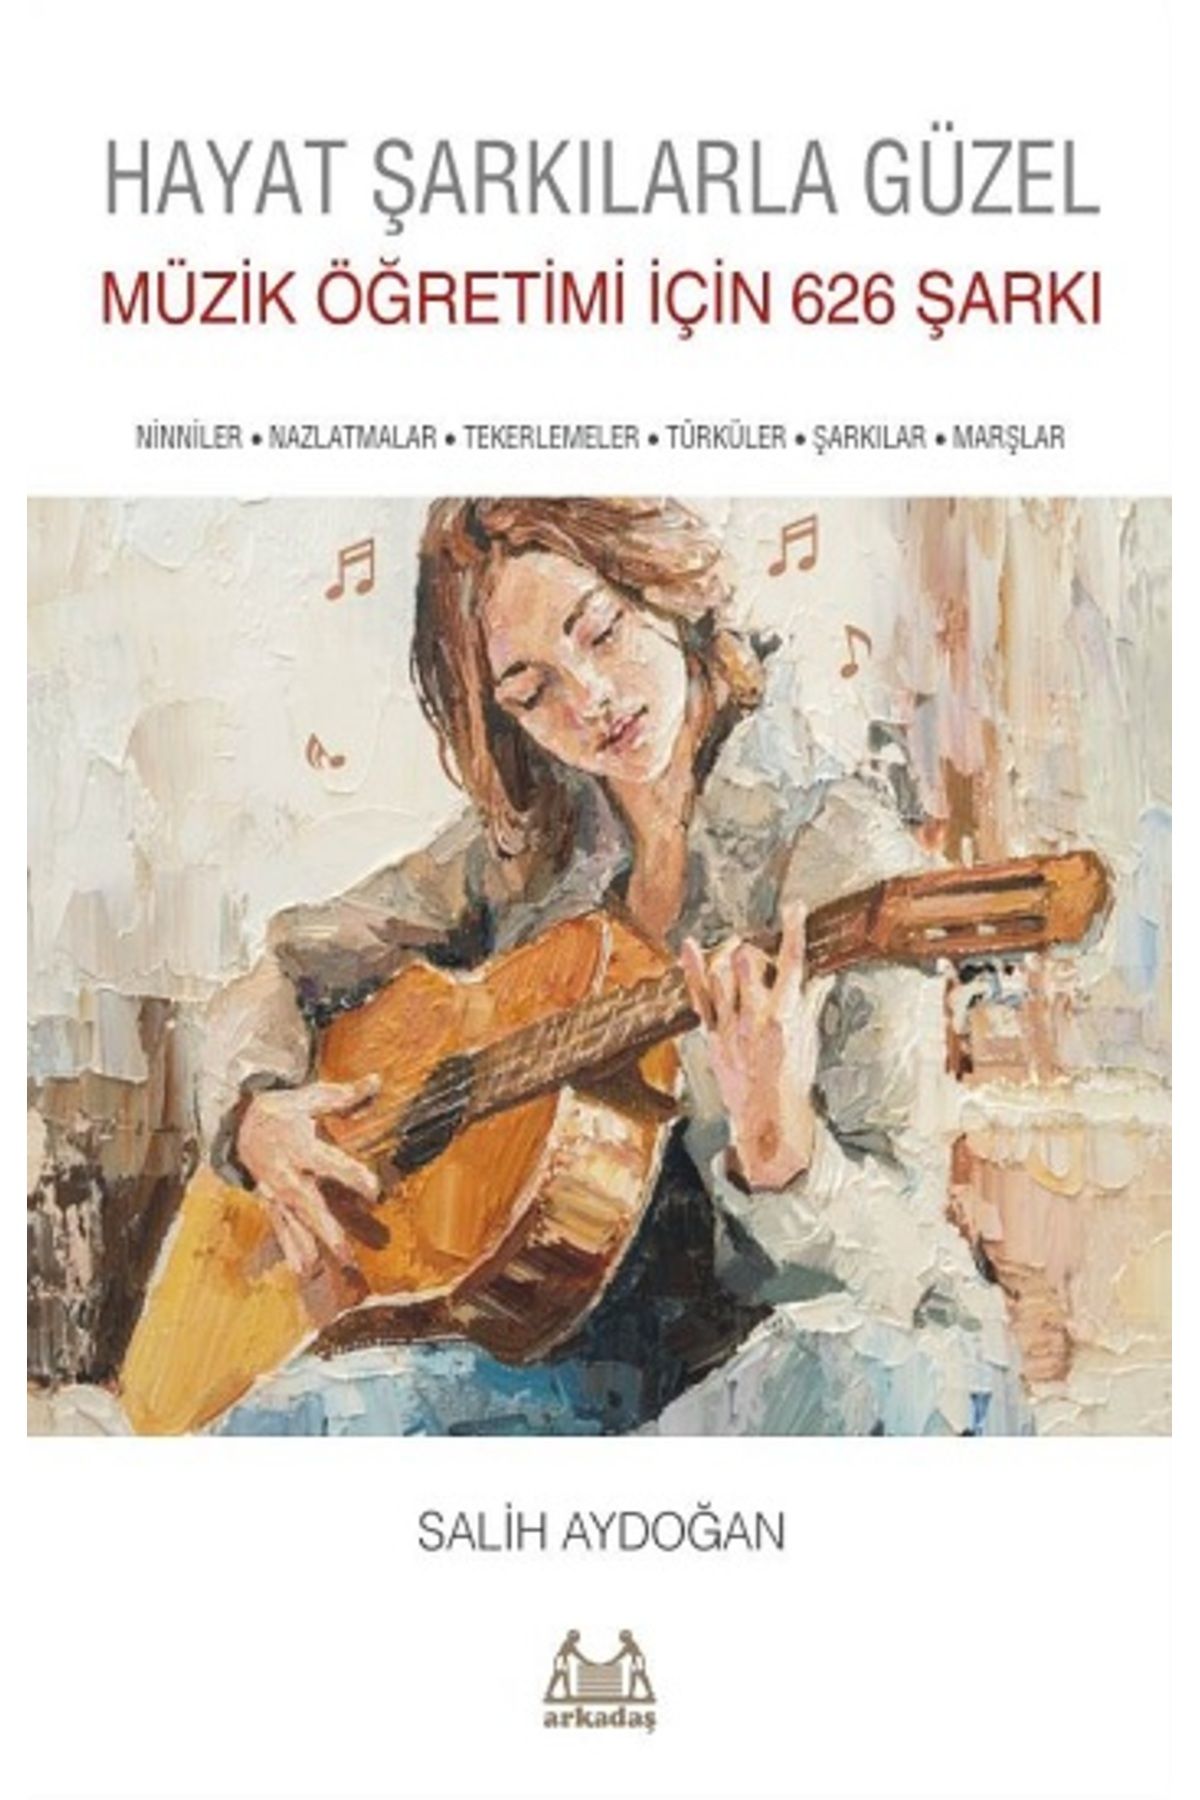 Arkadaş Yayıncılık Hayat Şarkılarla Güzel: Müzik Öğretimi İçin 626 Şarkı kitabı - Salih Aydoğan - Arkadaş Yayınları